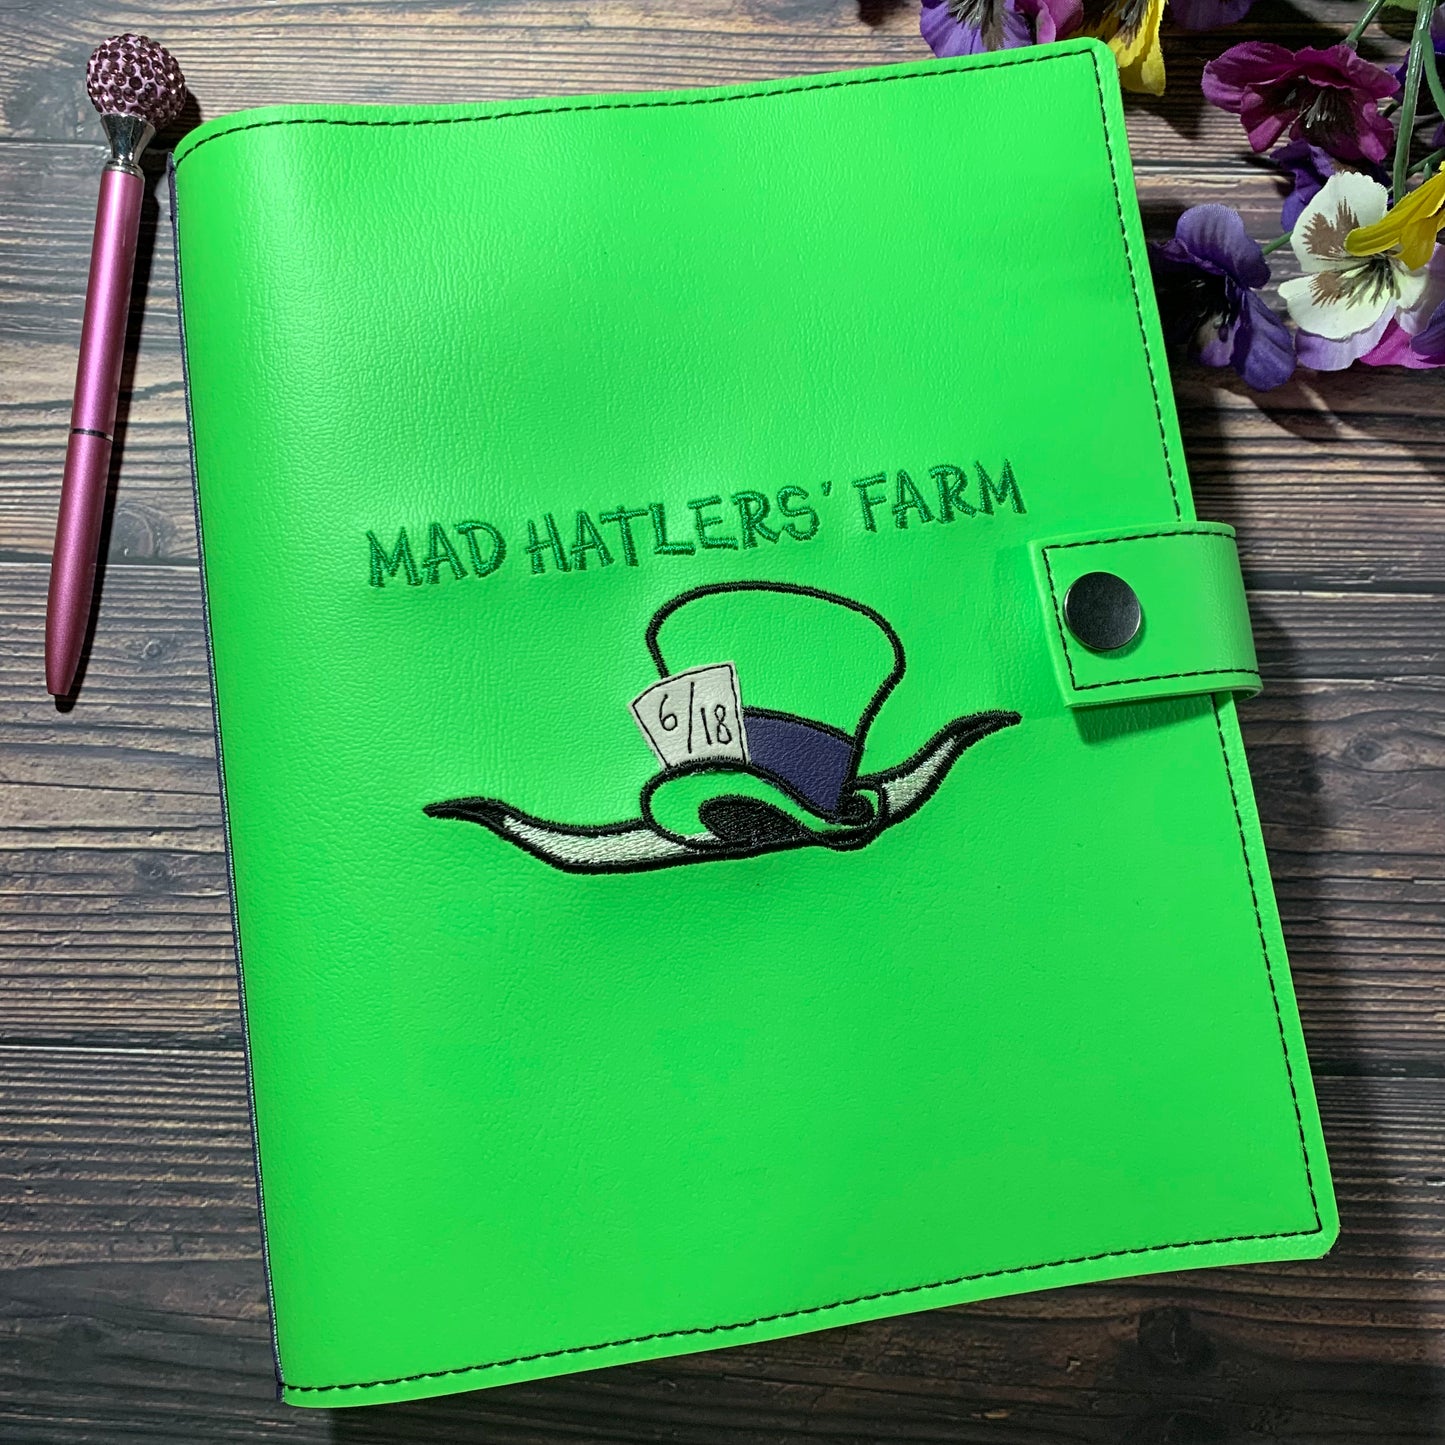 Mad Hatler’s Farm